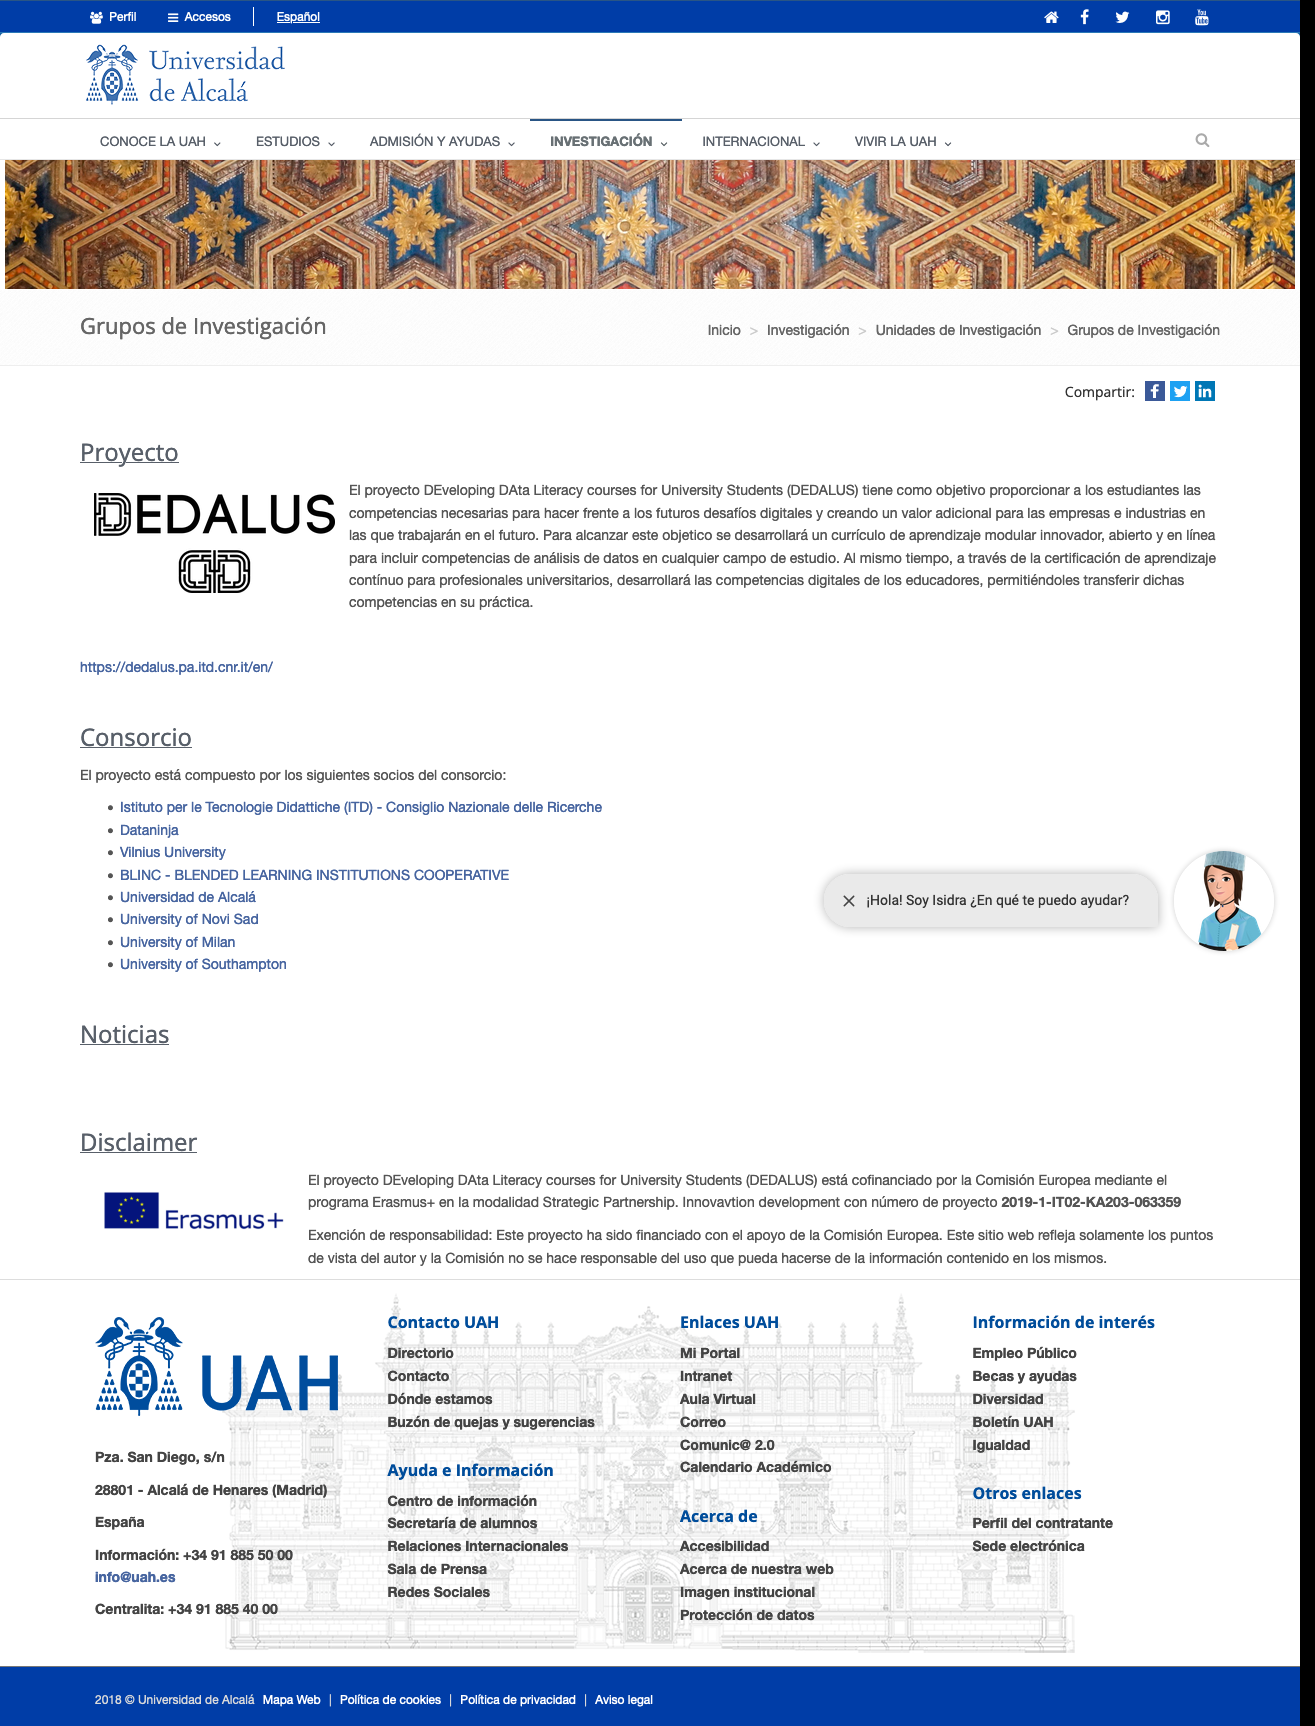 Link on Universidad de Alcalá website